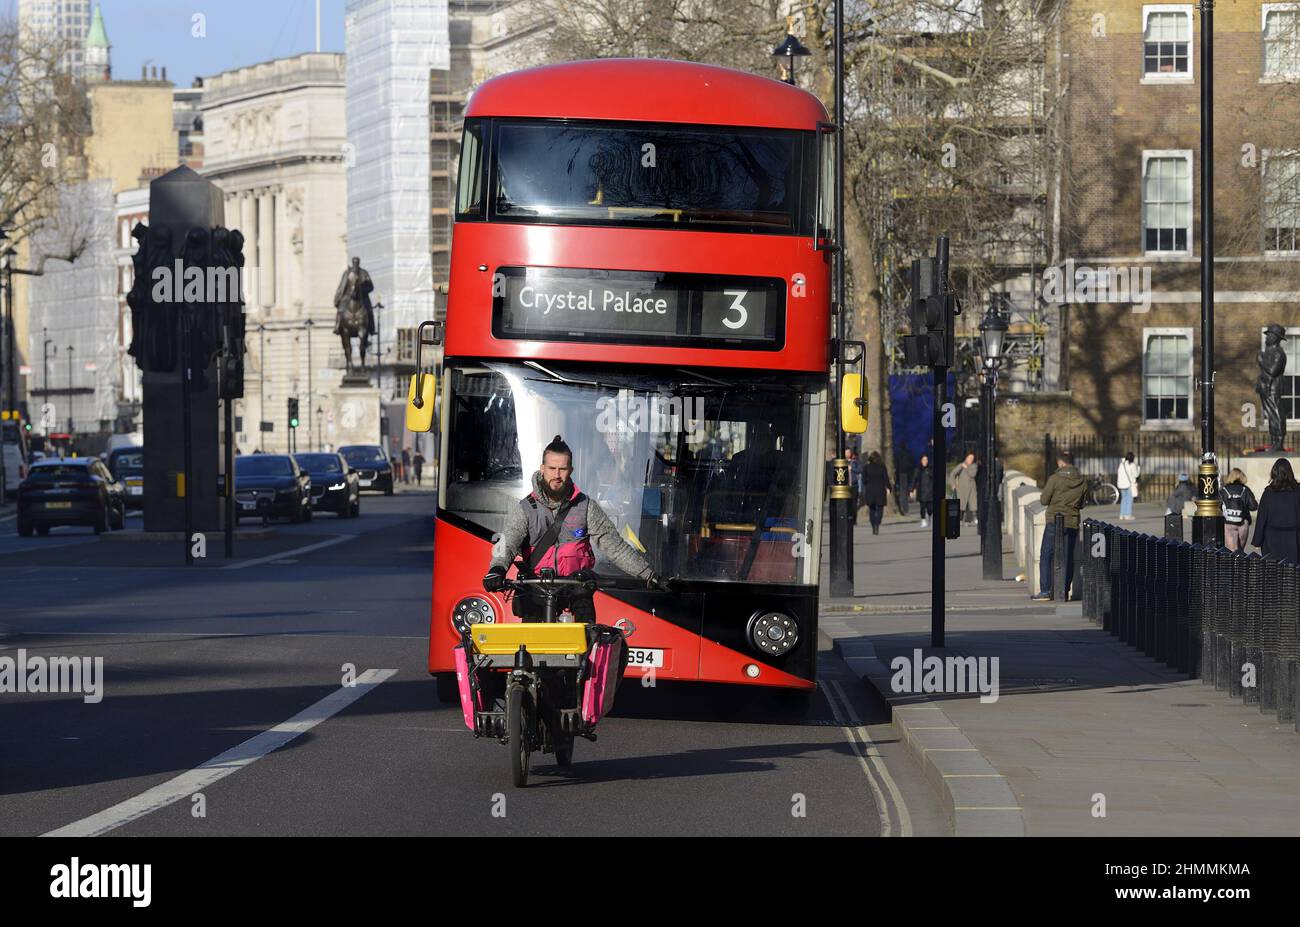 Londra, Inghilterra, Regno Unito. Autista di consegna biciclette di fronte a un autobus, Whitehall, Westminster Foto Stock